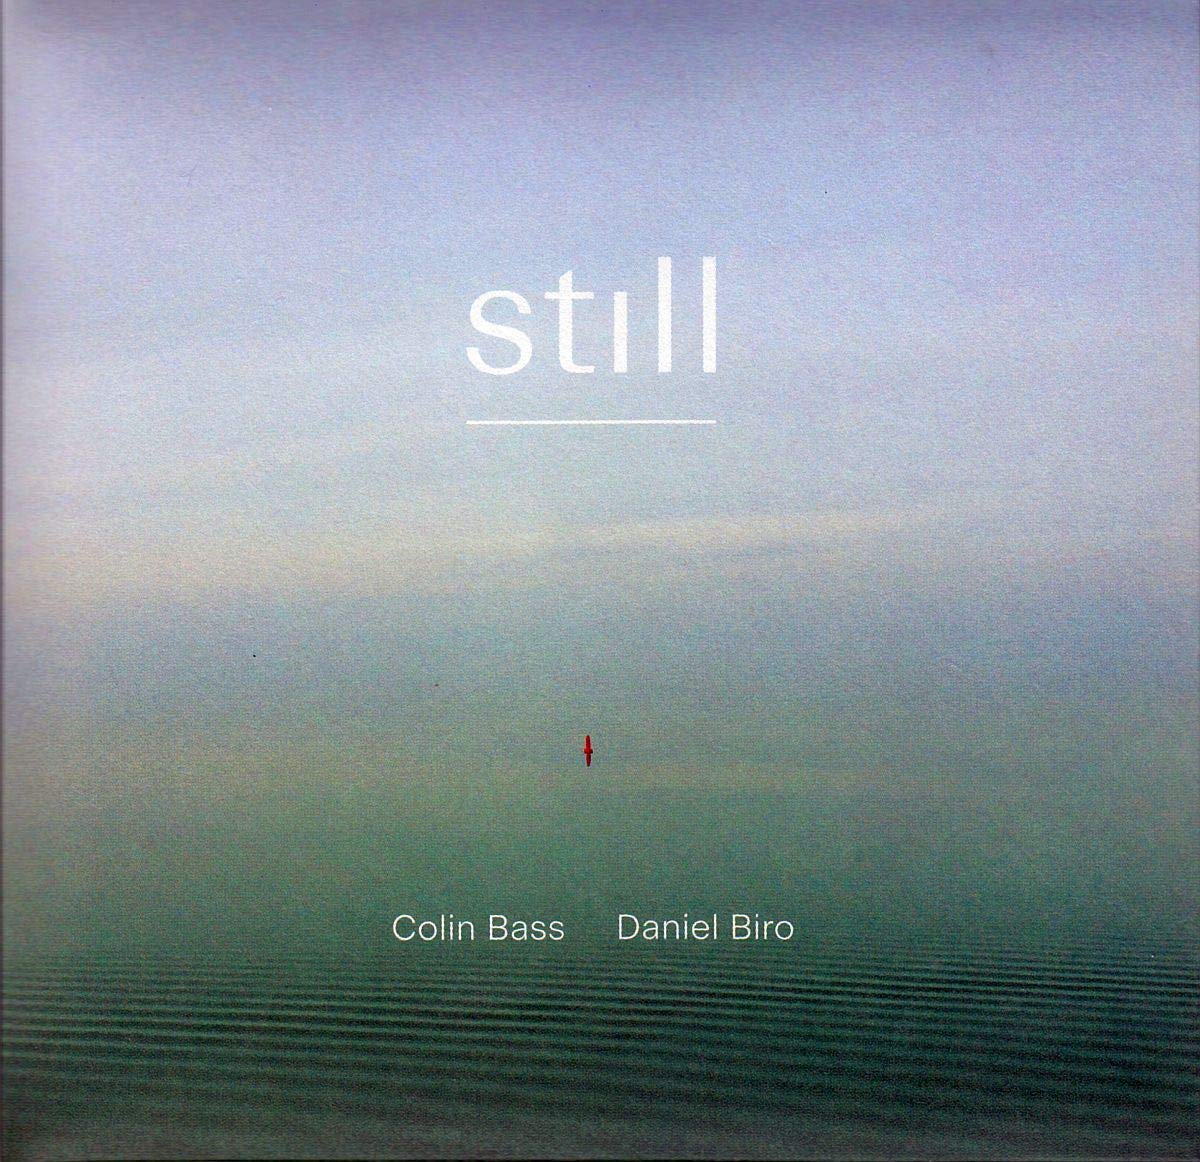 Audio Cd Colin Bass / Daniel Biro - Still NUOVO SIGILLATO, EDIZIONE DEL 03/07/2020 SUBITO DISPONIBILE